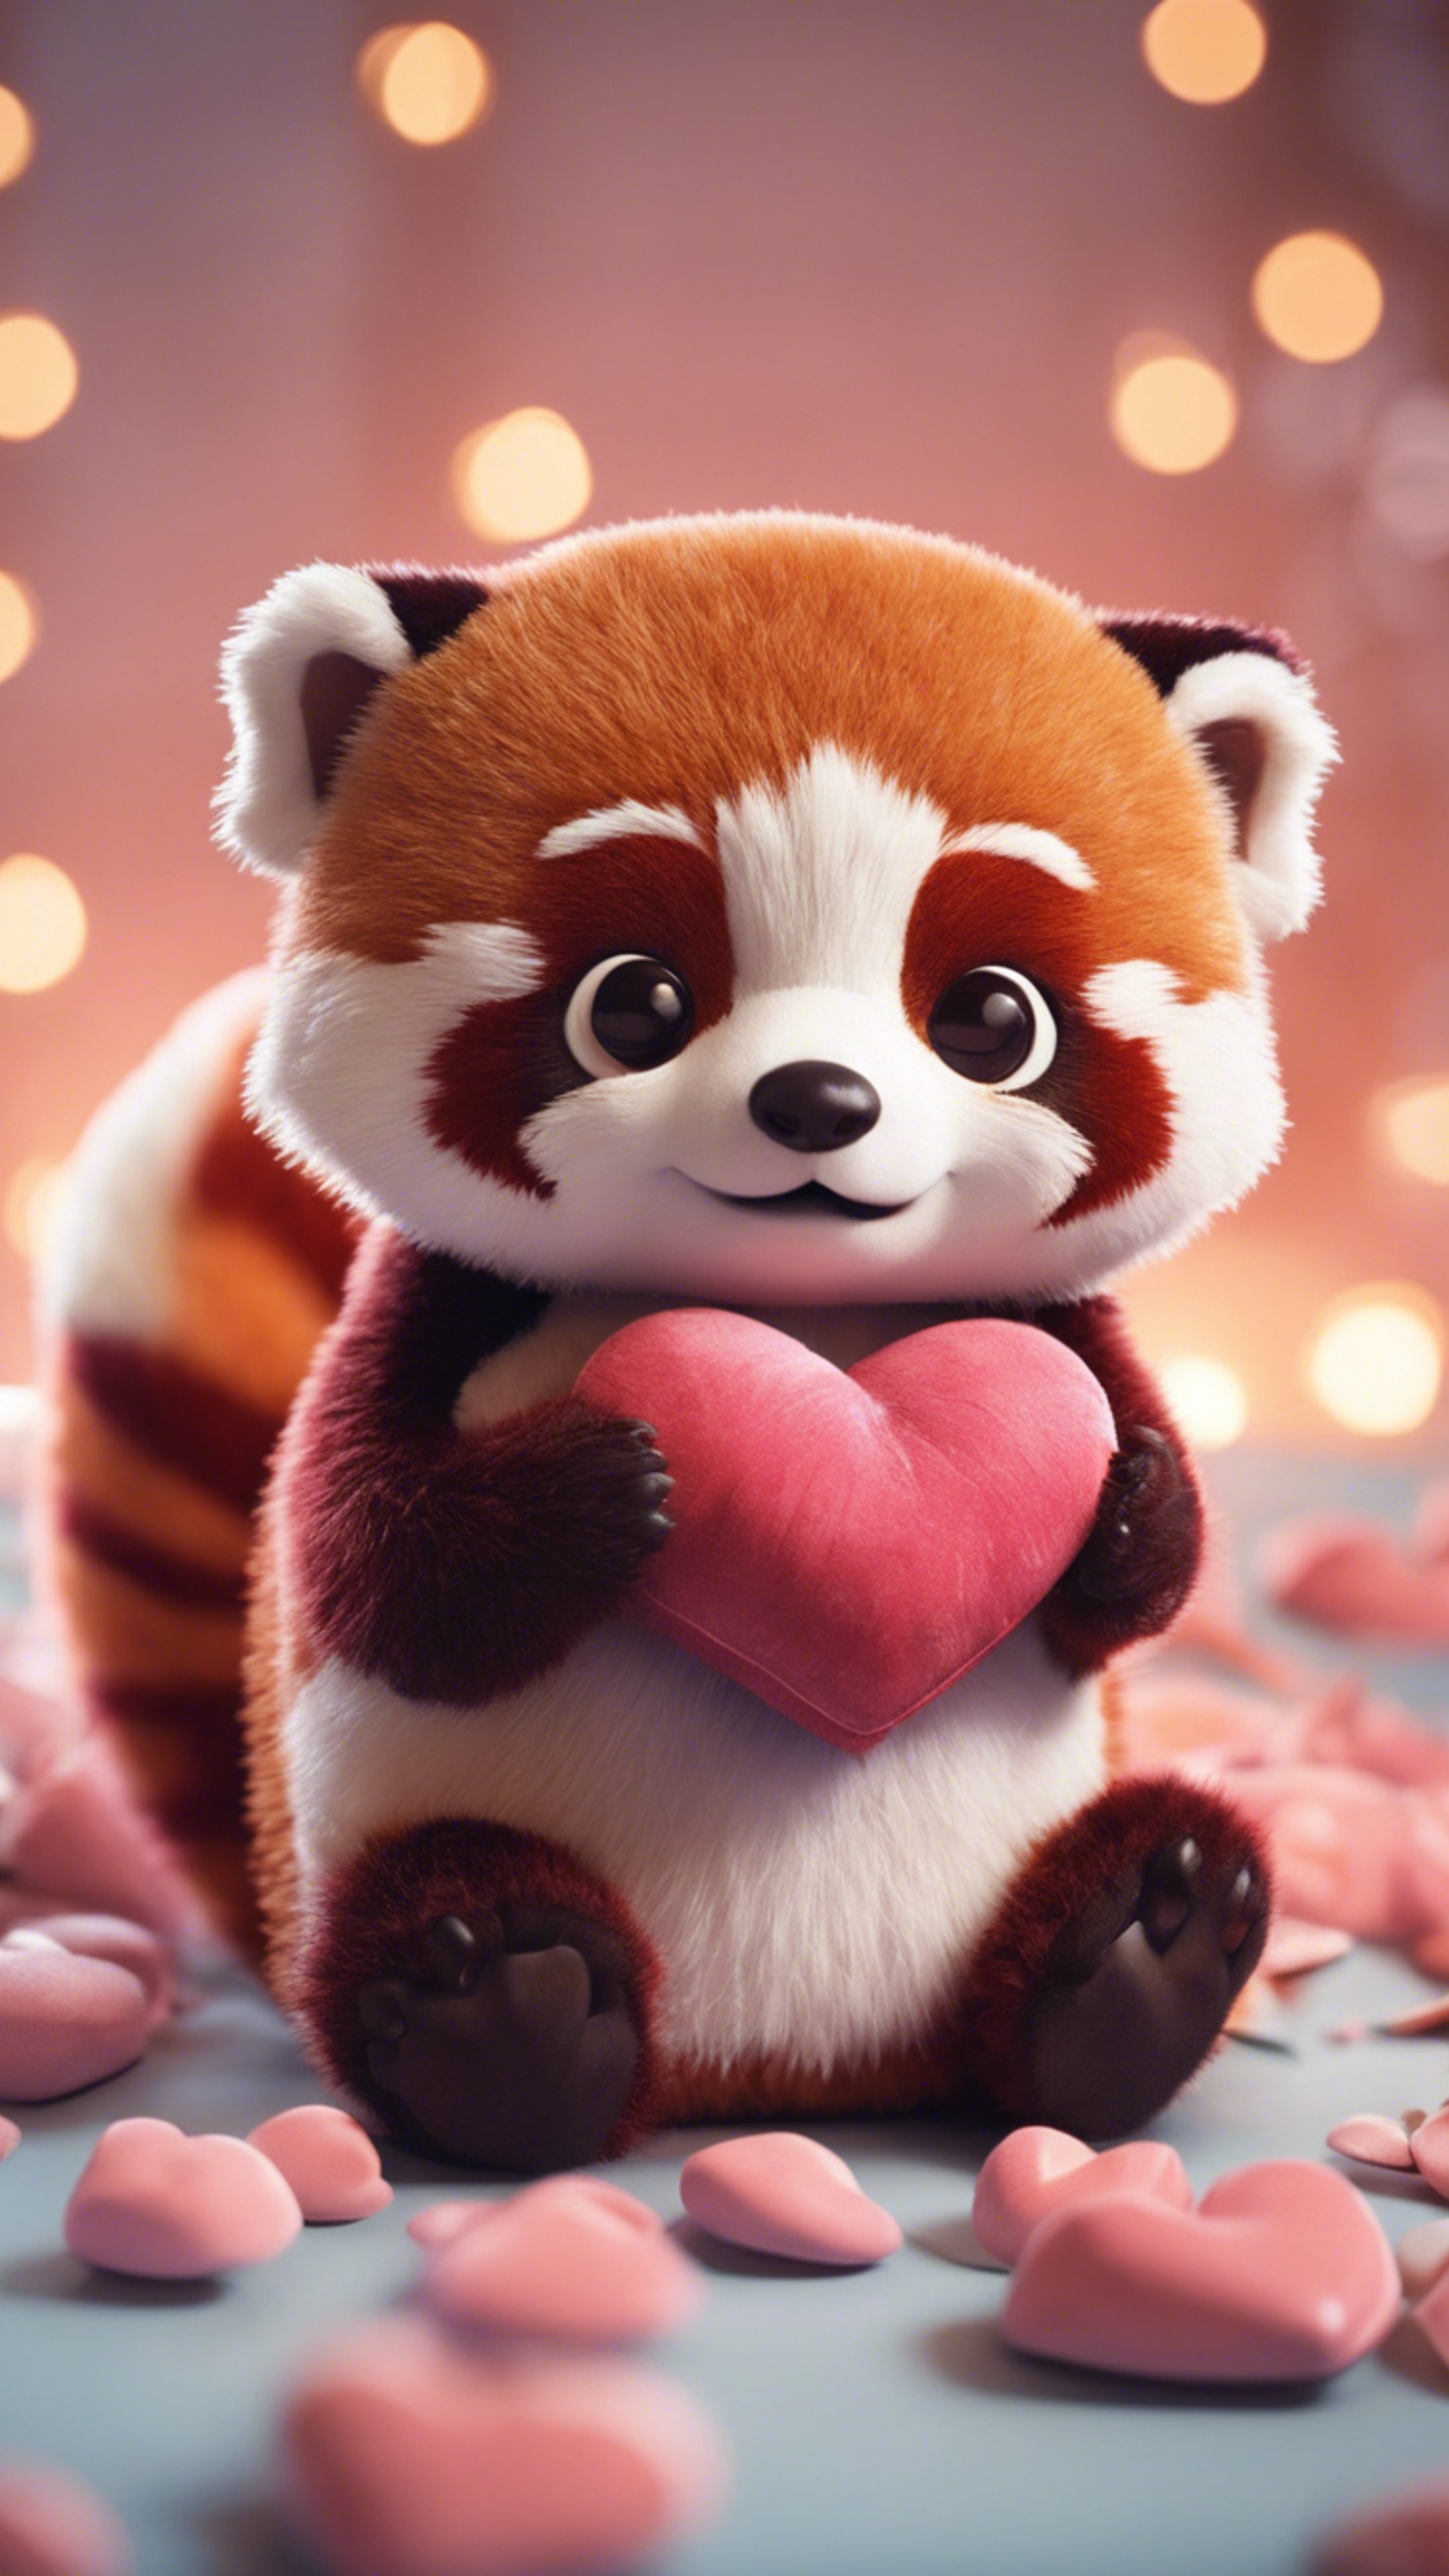 A kawaii red panda, wide-eyed, hugging a heart-shaped pillow. Ფონი[45d6f15b7fce49d58985]